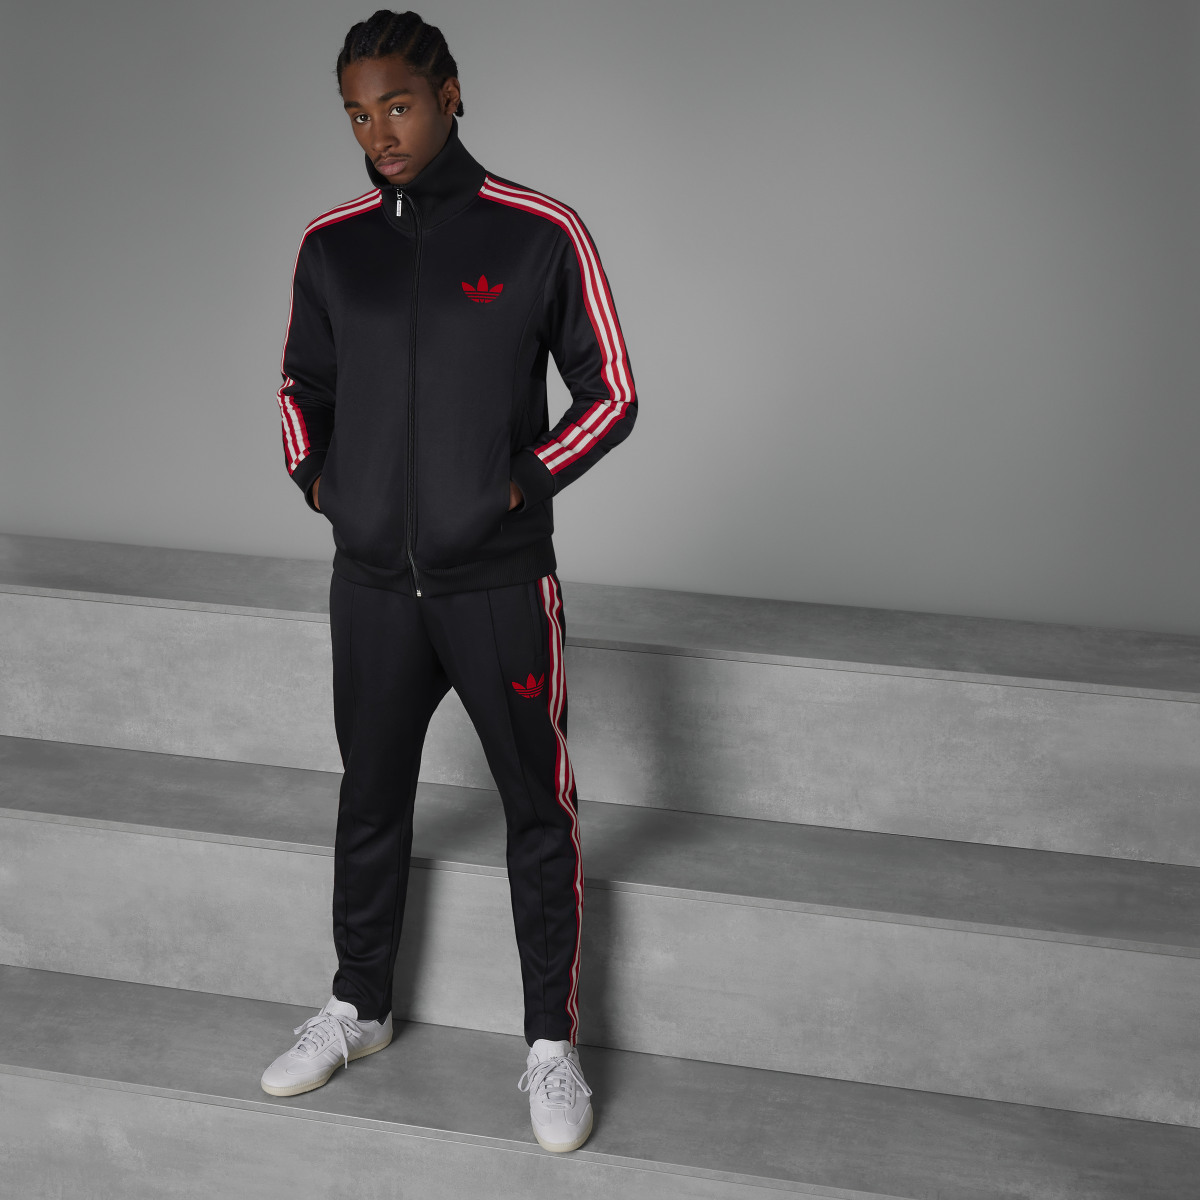 Adidas Track pants OG Ajax Amsterdam. 9